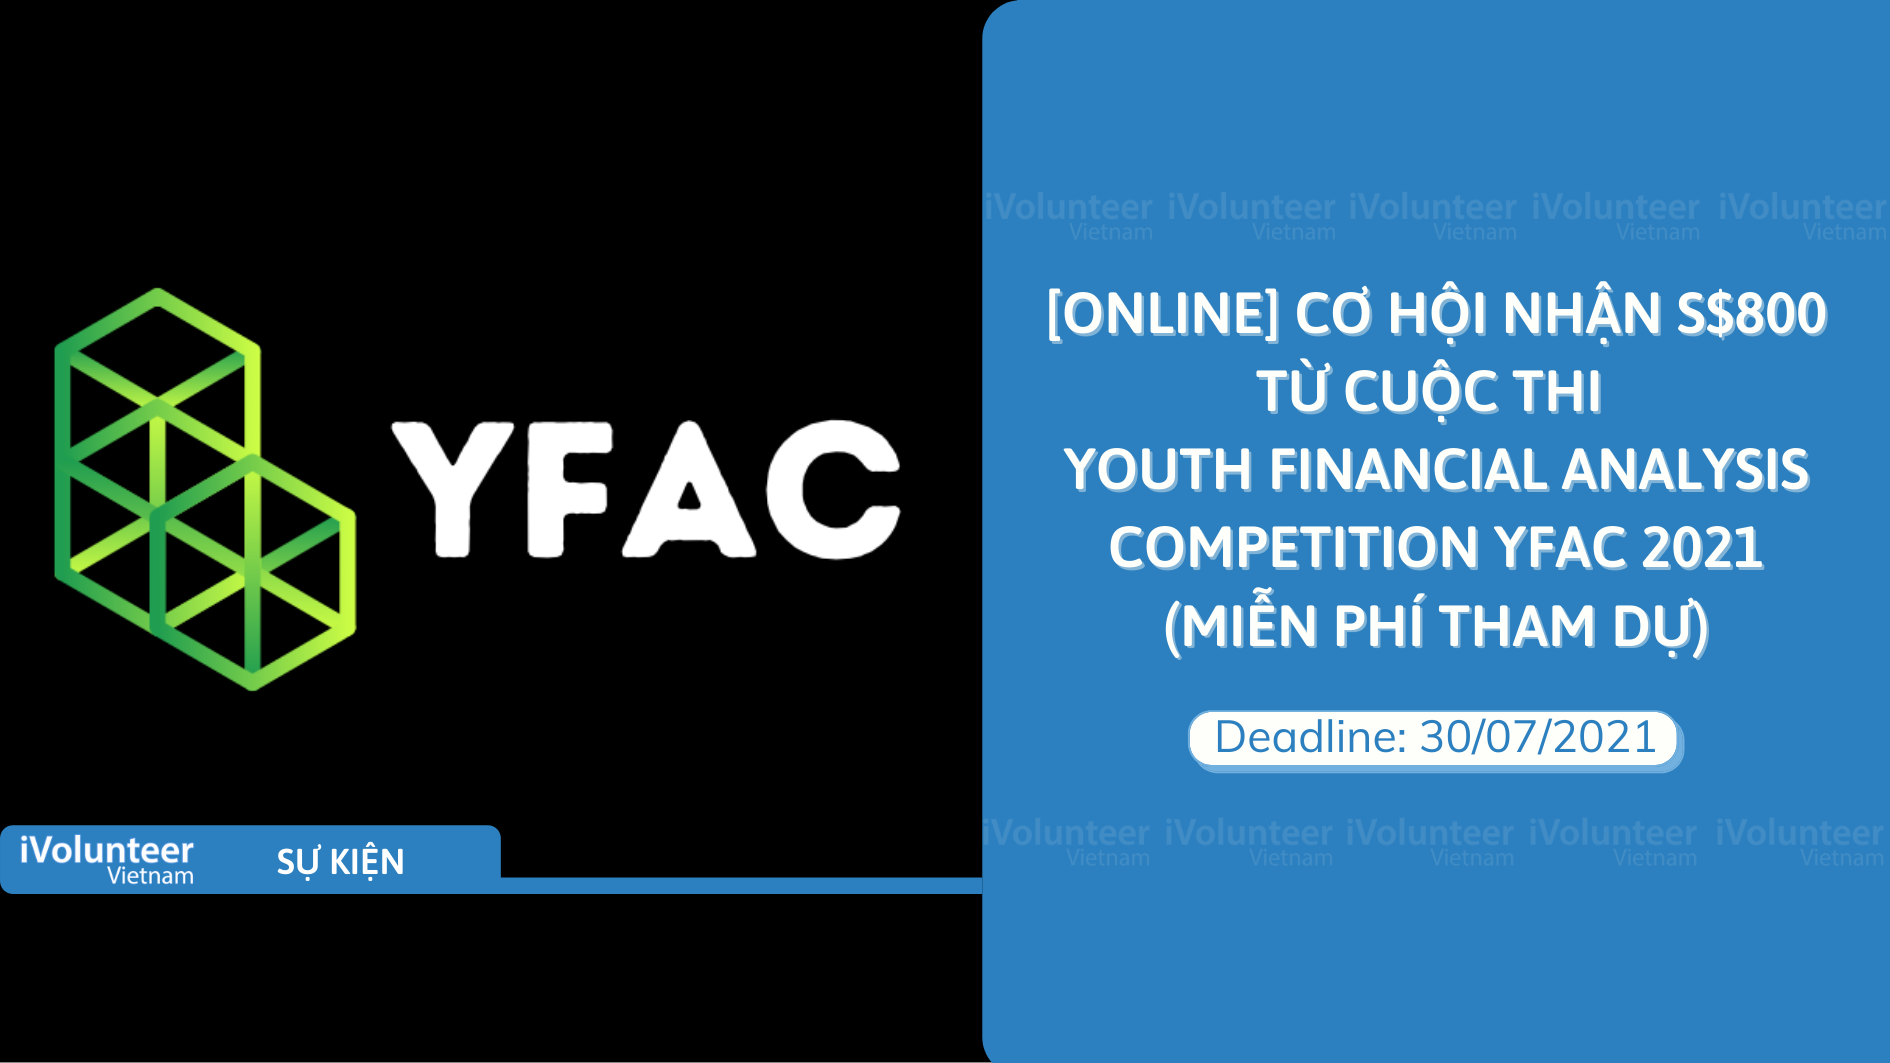 [Online] Cơ Hội Nhận $800 Từ Cuộc Thi Youth Financial Analysis Competition YFAC 2021 (Miễn Phí Tham Dự)